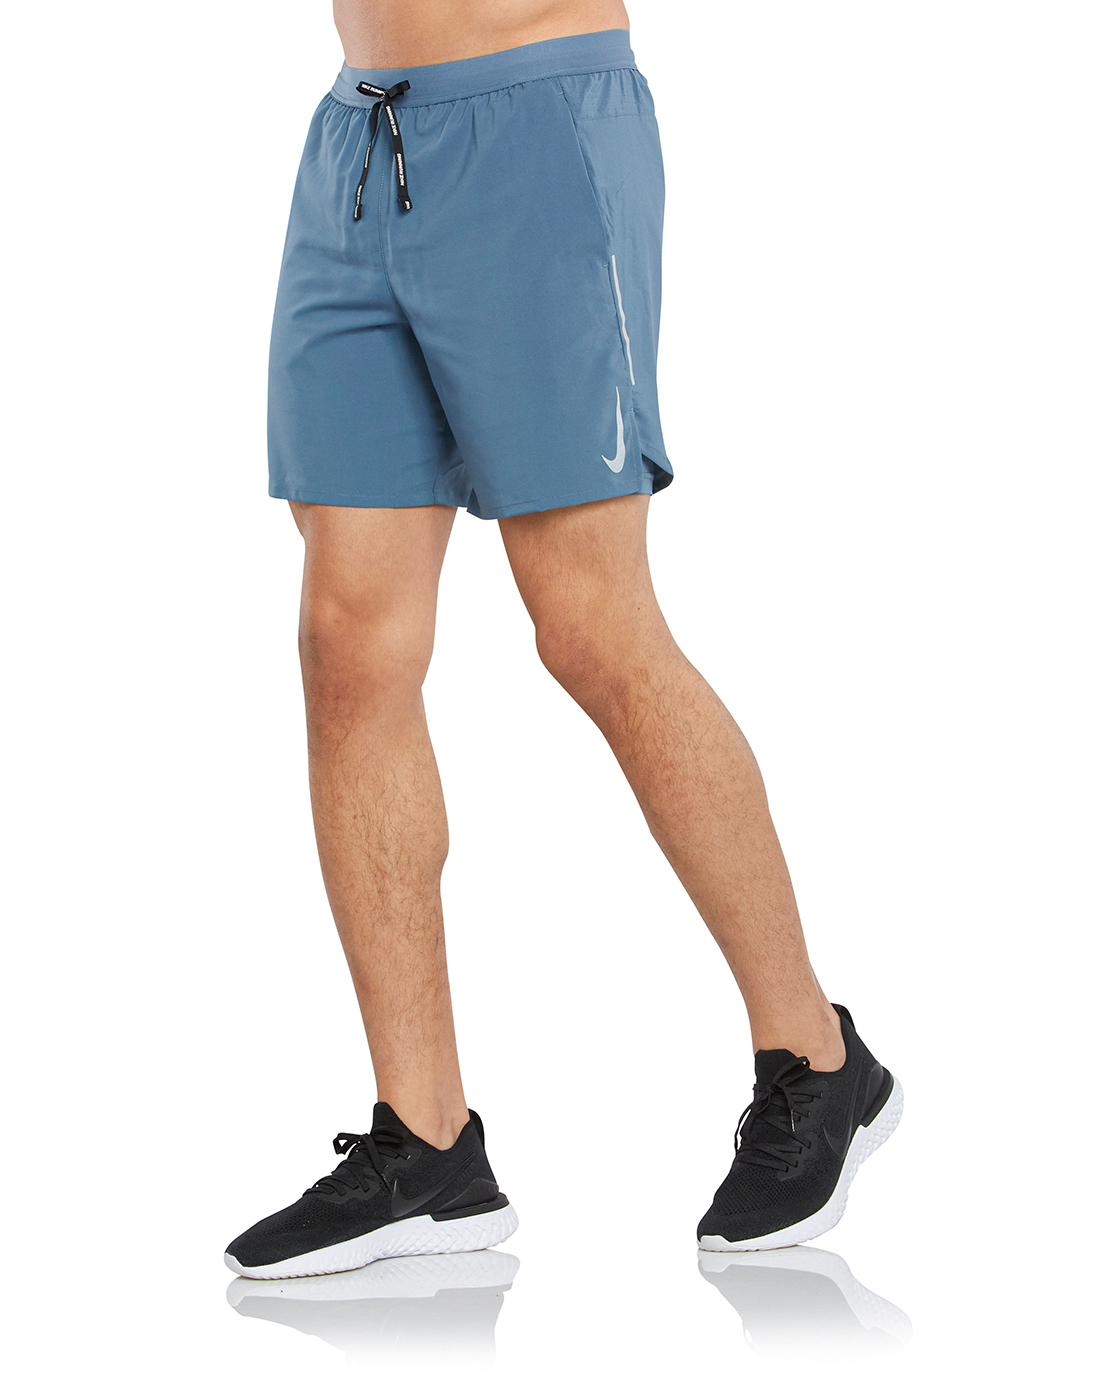 nike flex stride 7 inch shorts